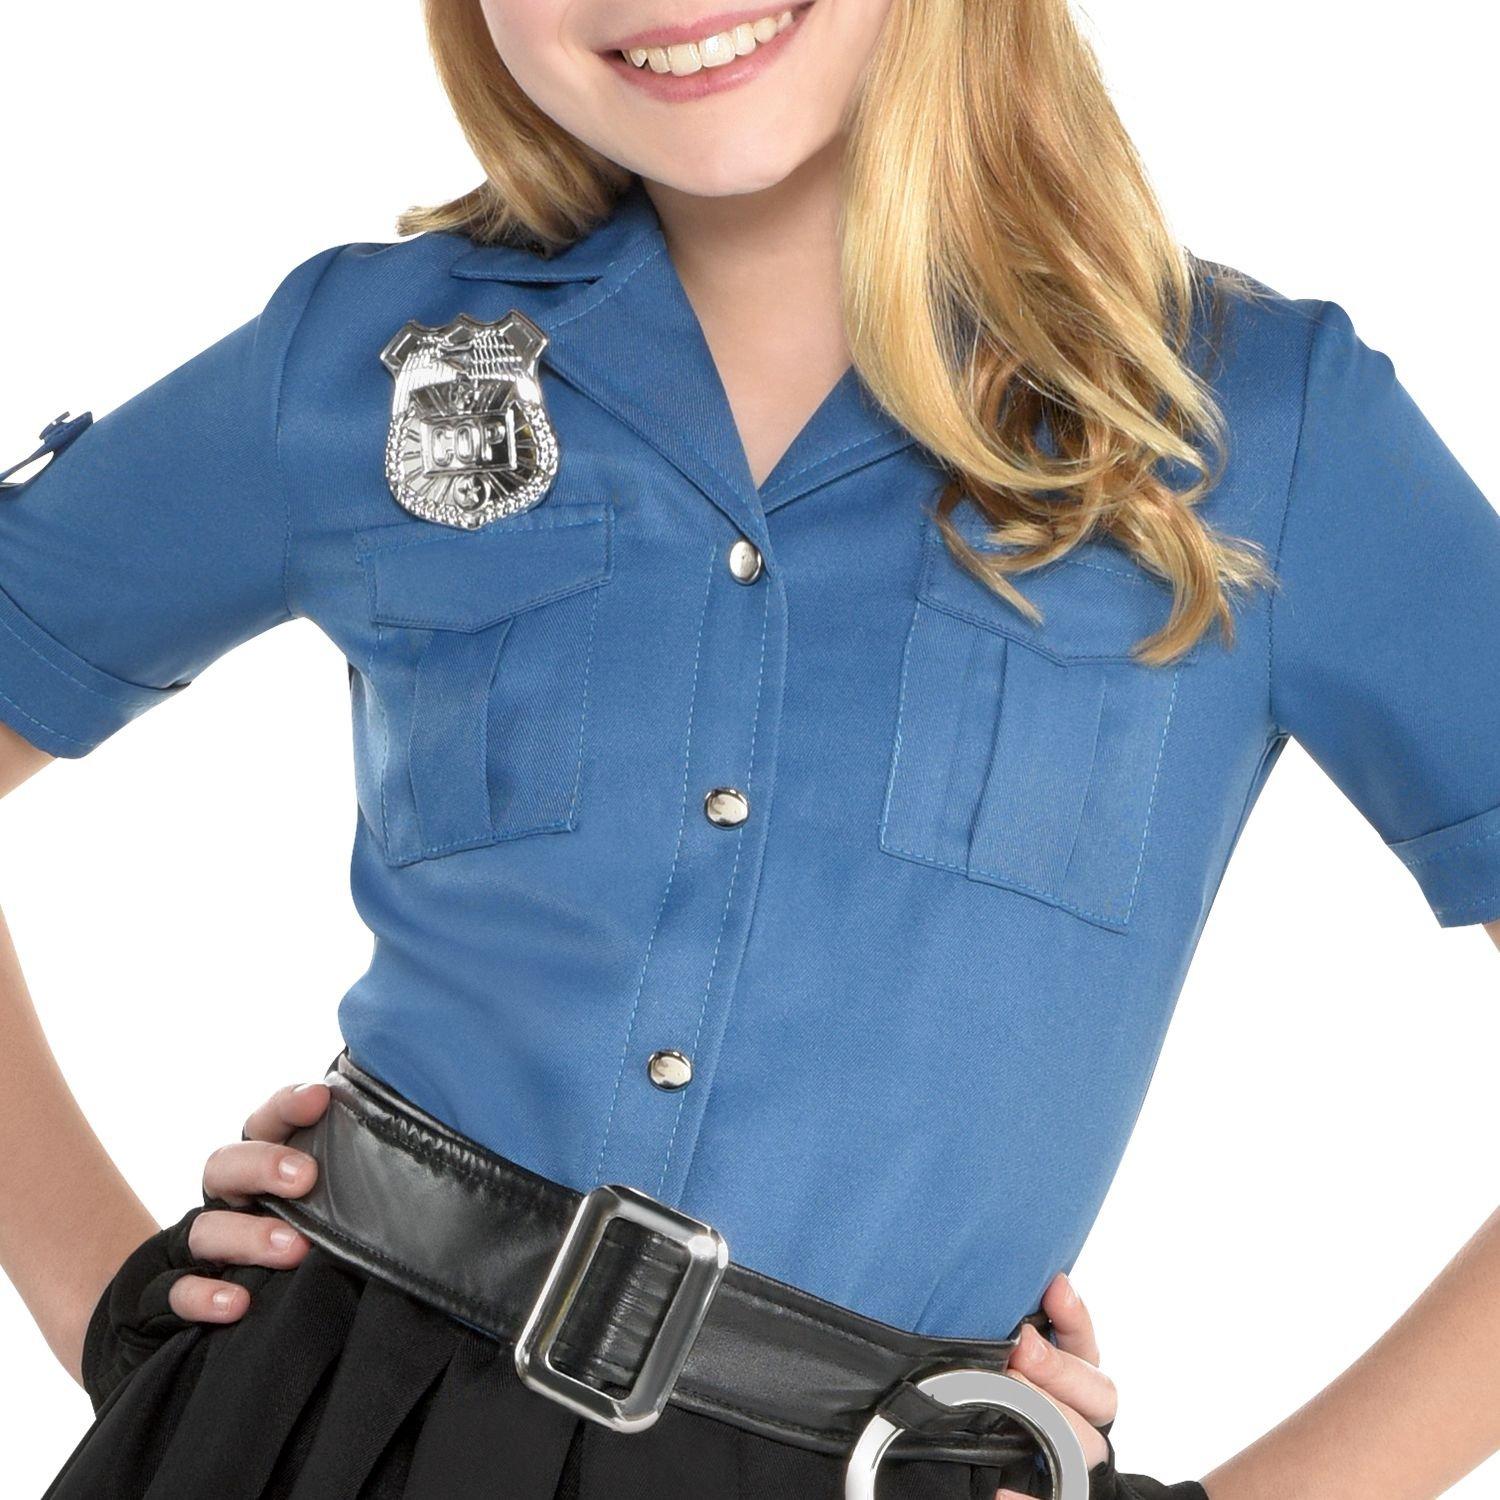 cop halloween costumes for teenage girls